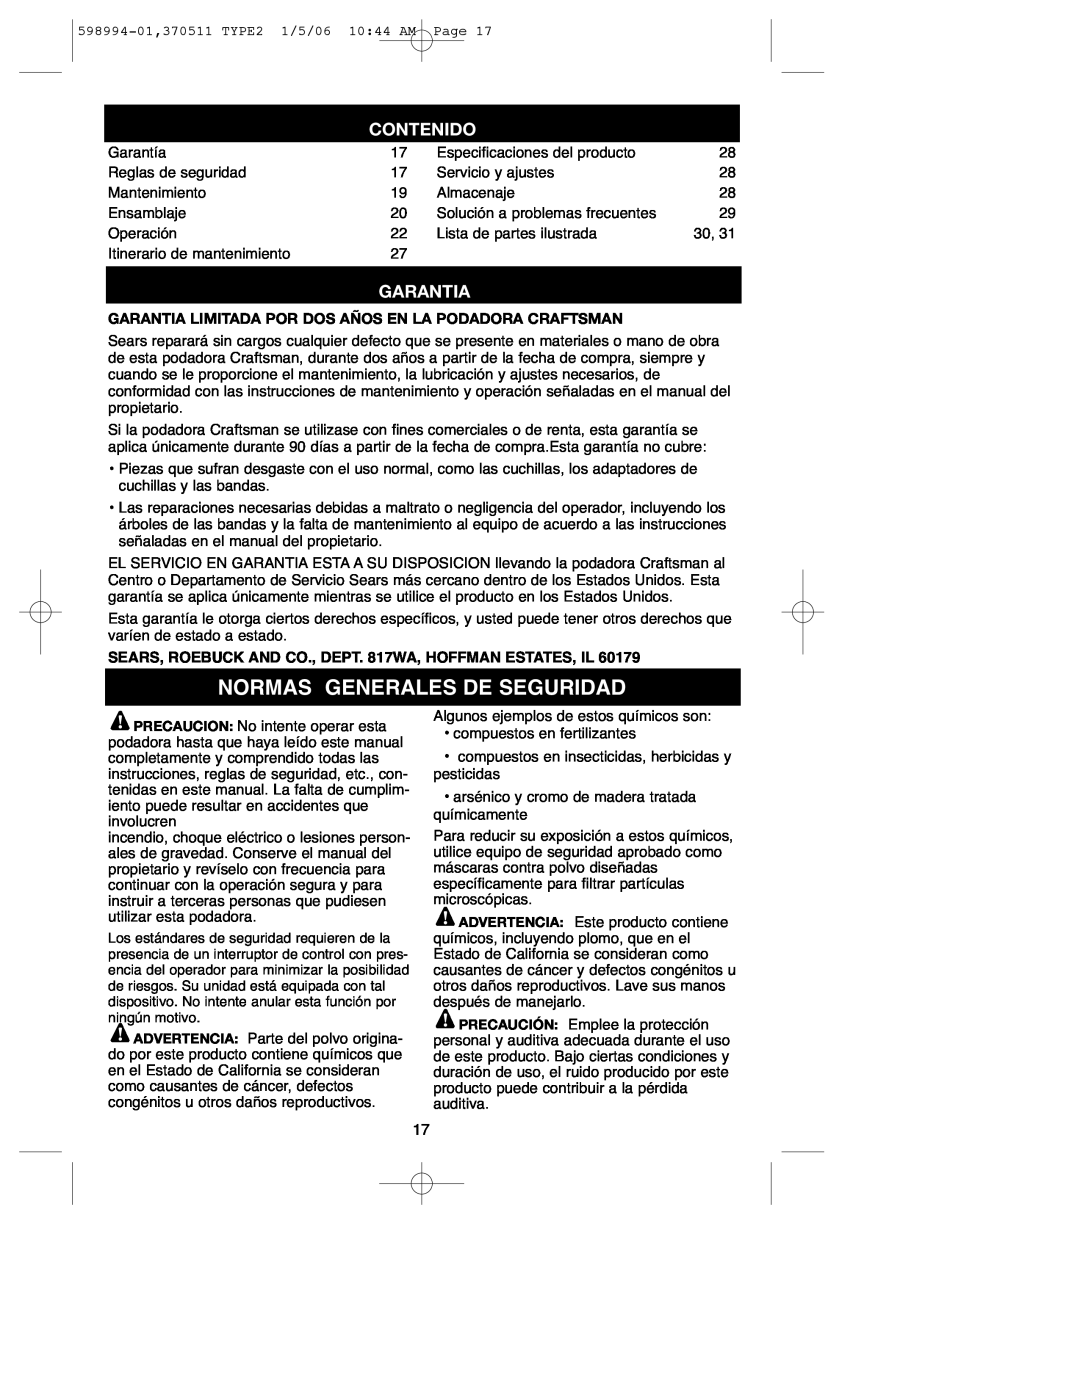 DeWalt 900.370511 instruction manual Normas Generales De Seguridad, Contenido, Garantia 